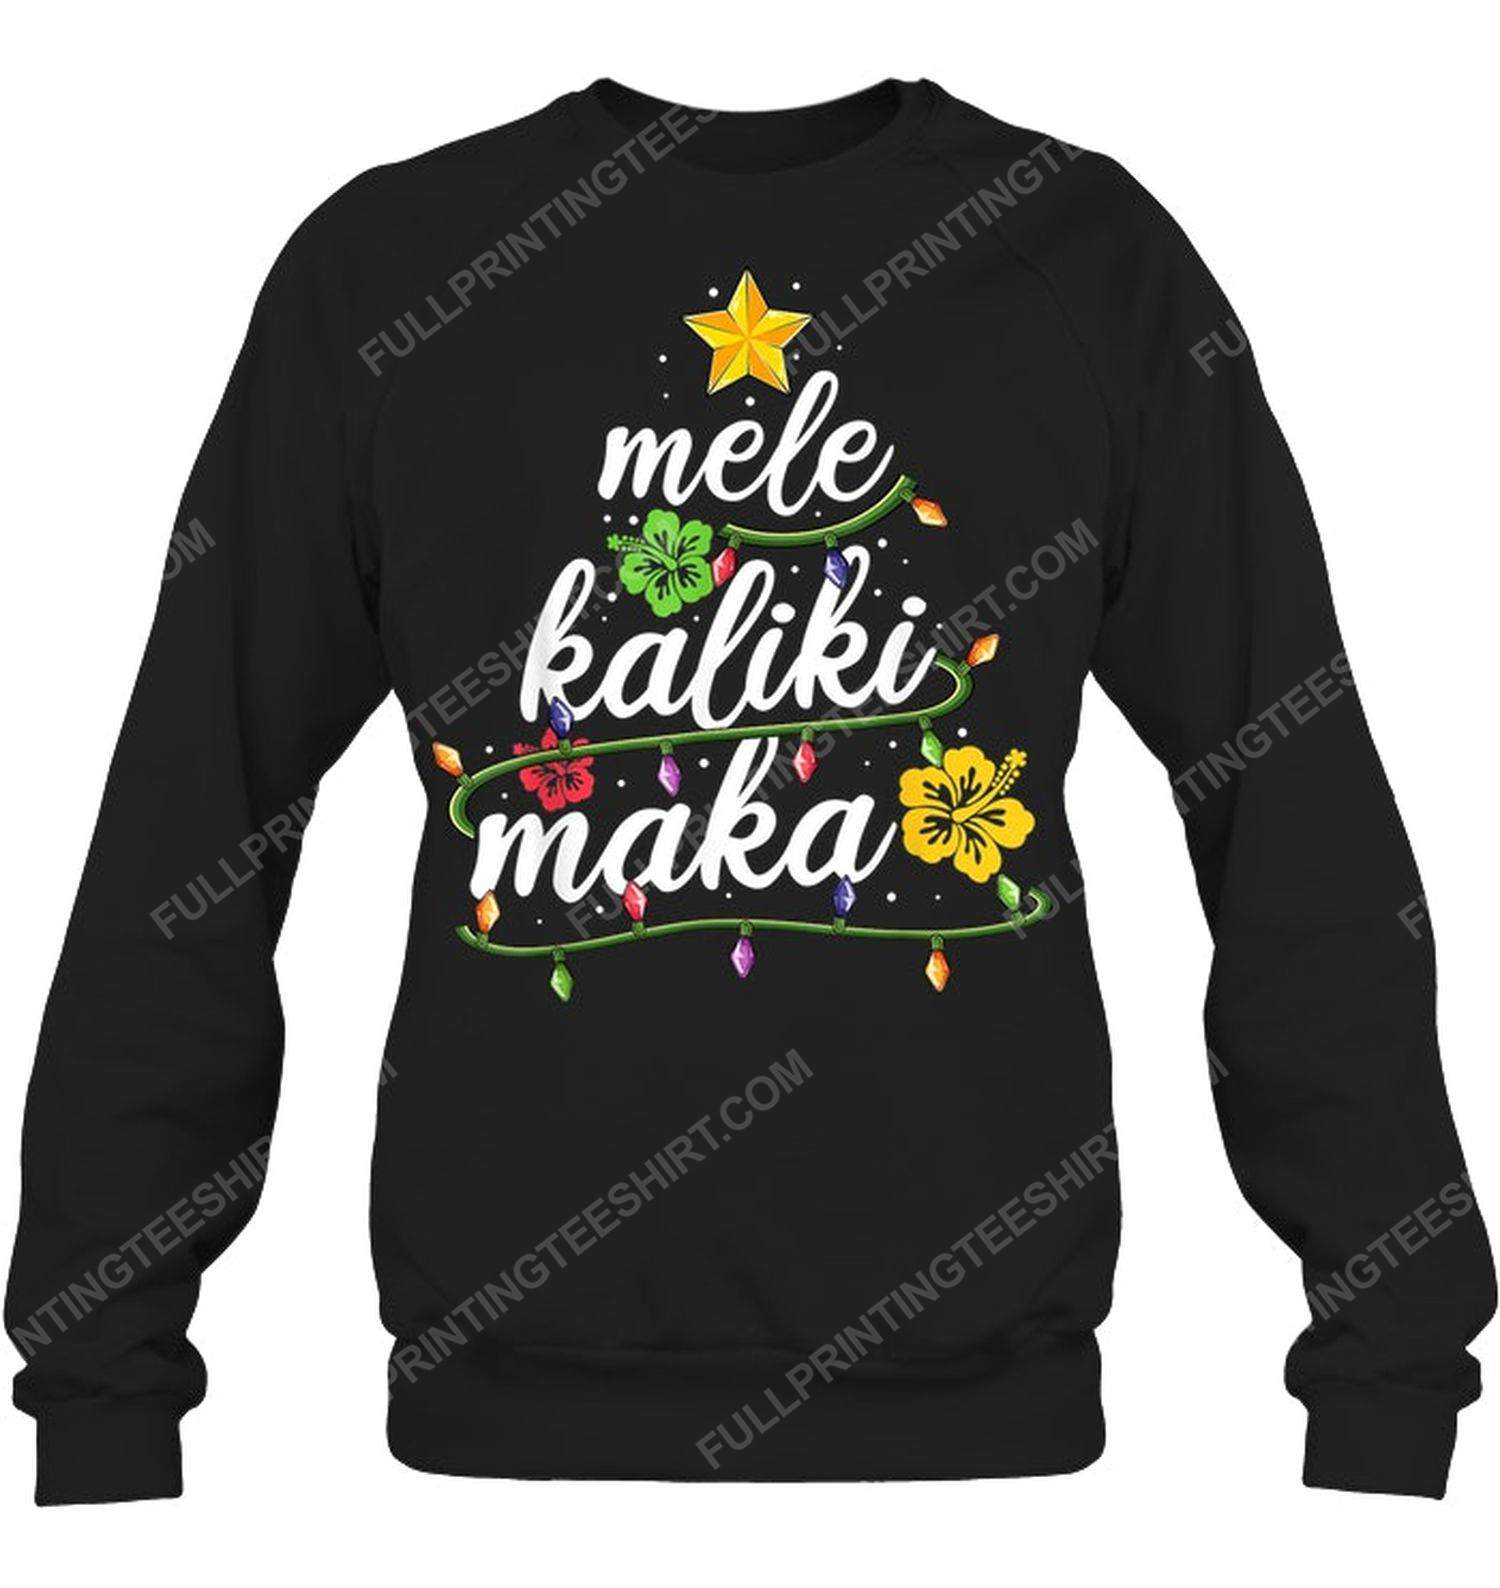 Mele kalikimaka hawaiian christmas vacation sweatshirt